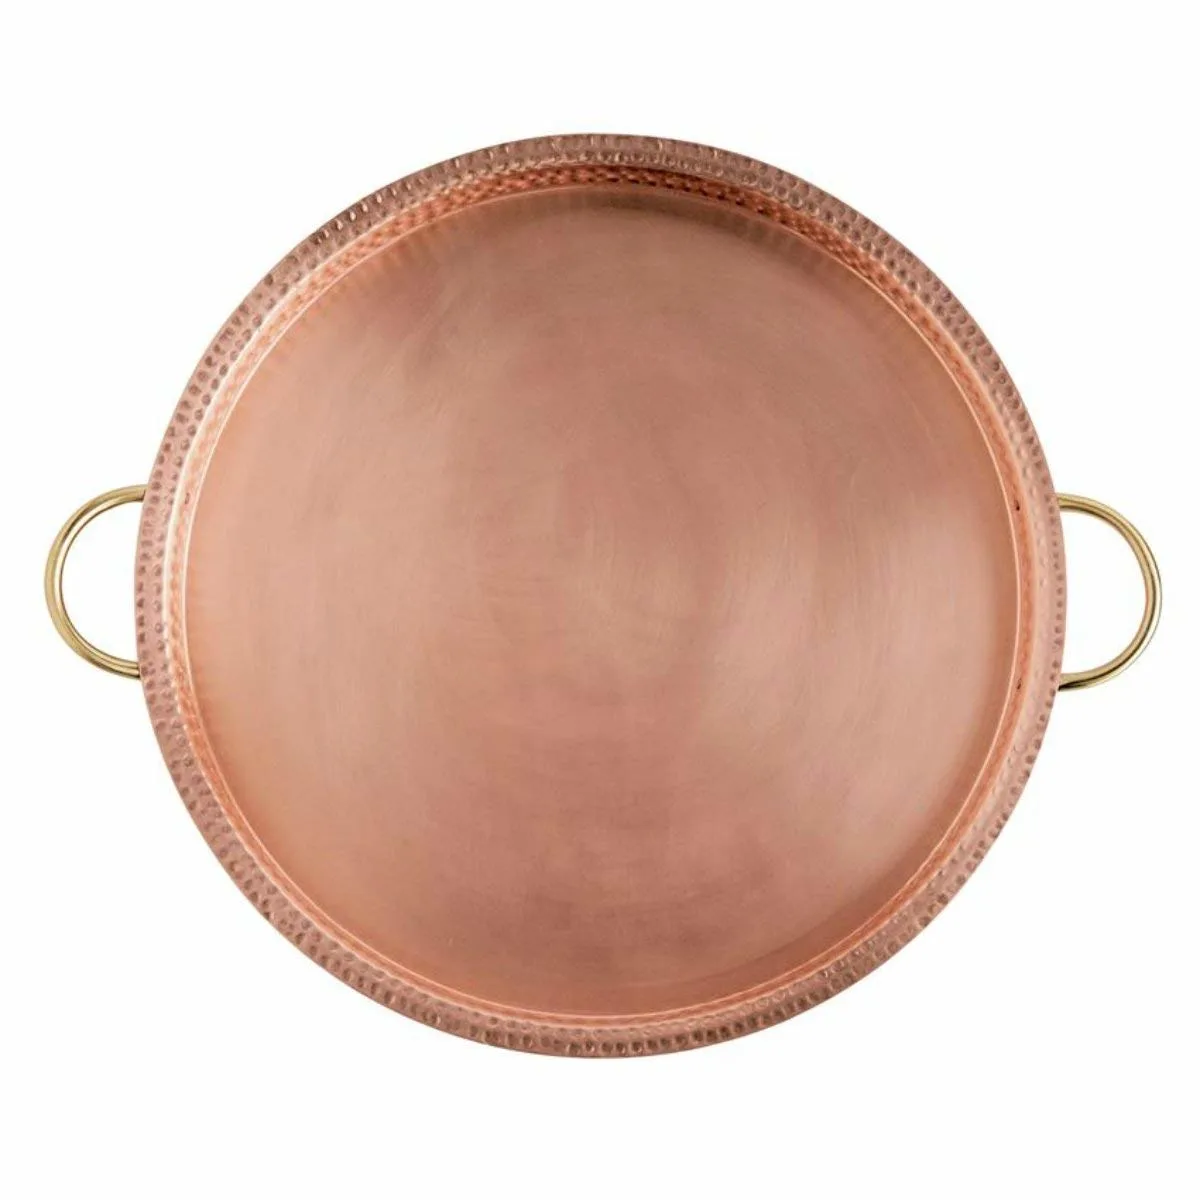 Garden party essentials copper round tray